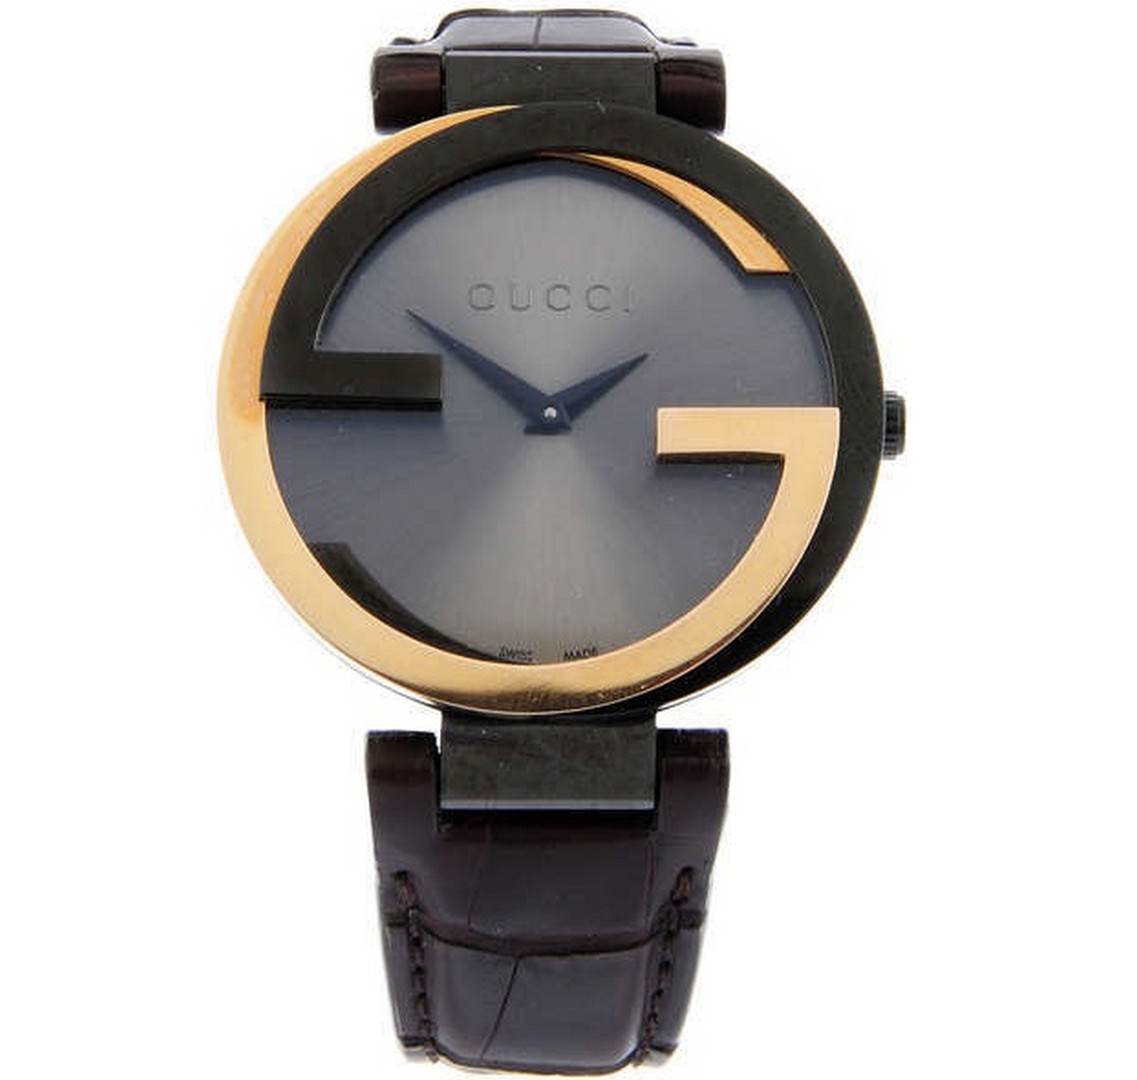 Gucci / 133.3 - Gentlmen's Steel Wrist Watch